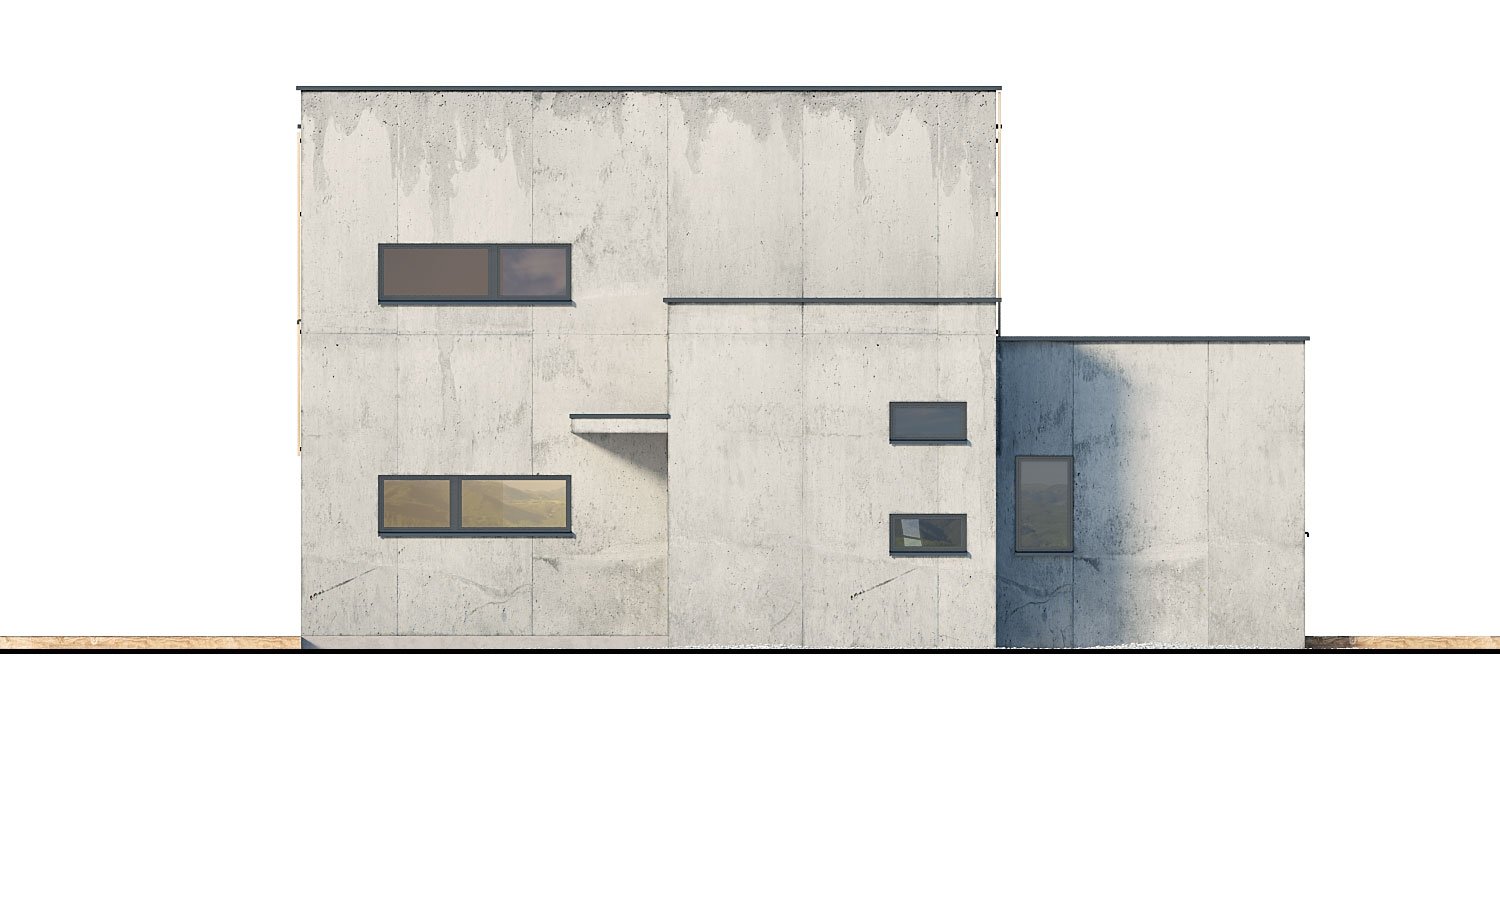 Pohľad 2. - Dvougenerační moderní rodinný dům s plochou střechou s krytým stáním pro auta.